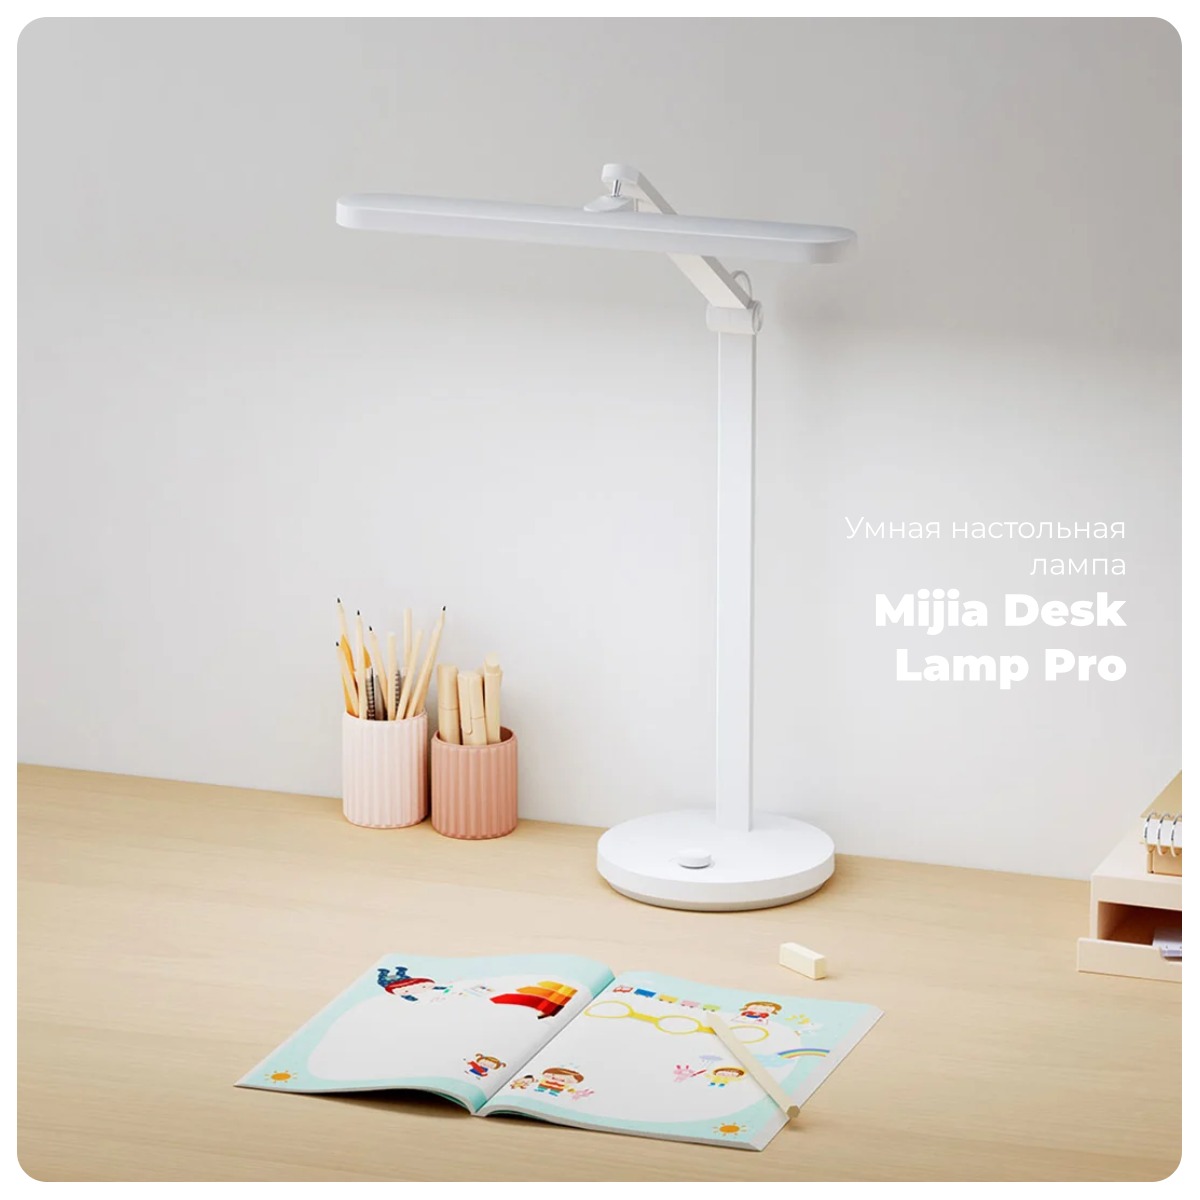 Mijia-Desk-Lamp-Pro-01